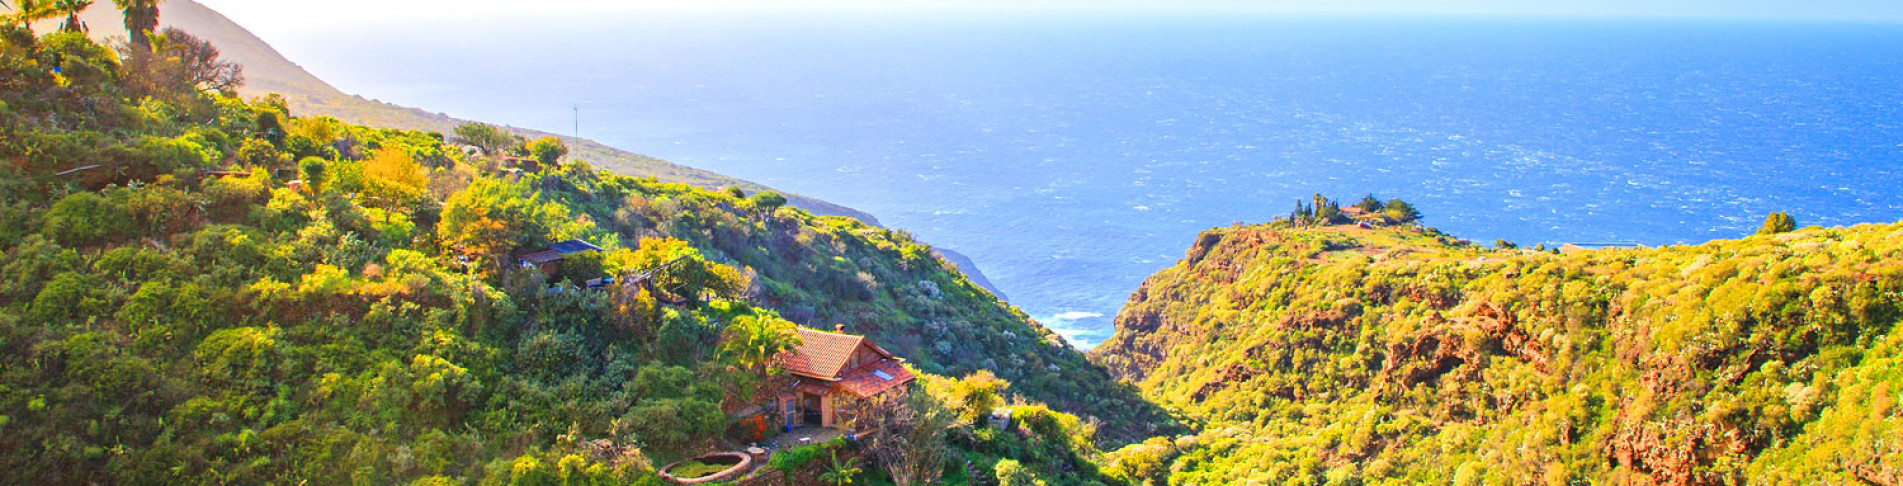 Urlaub auf La Palma | grüne Bergketten an der Küste